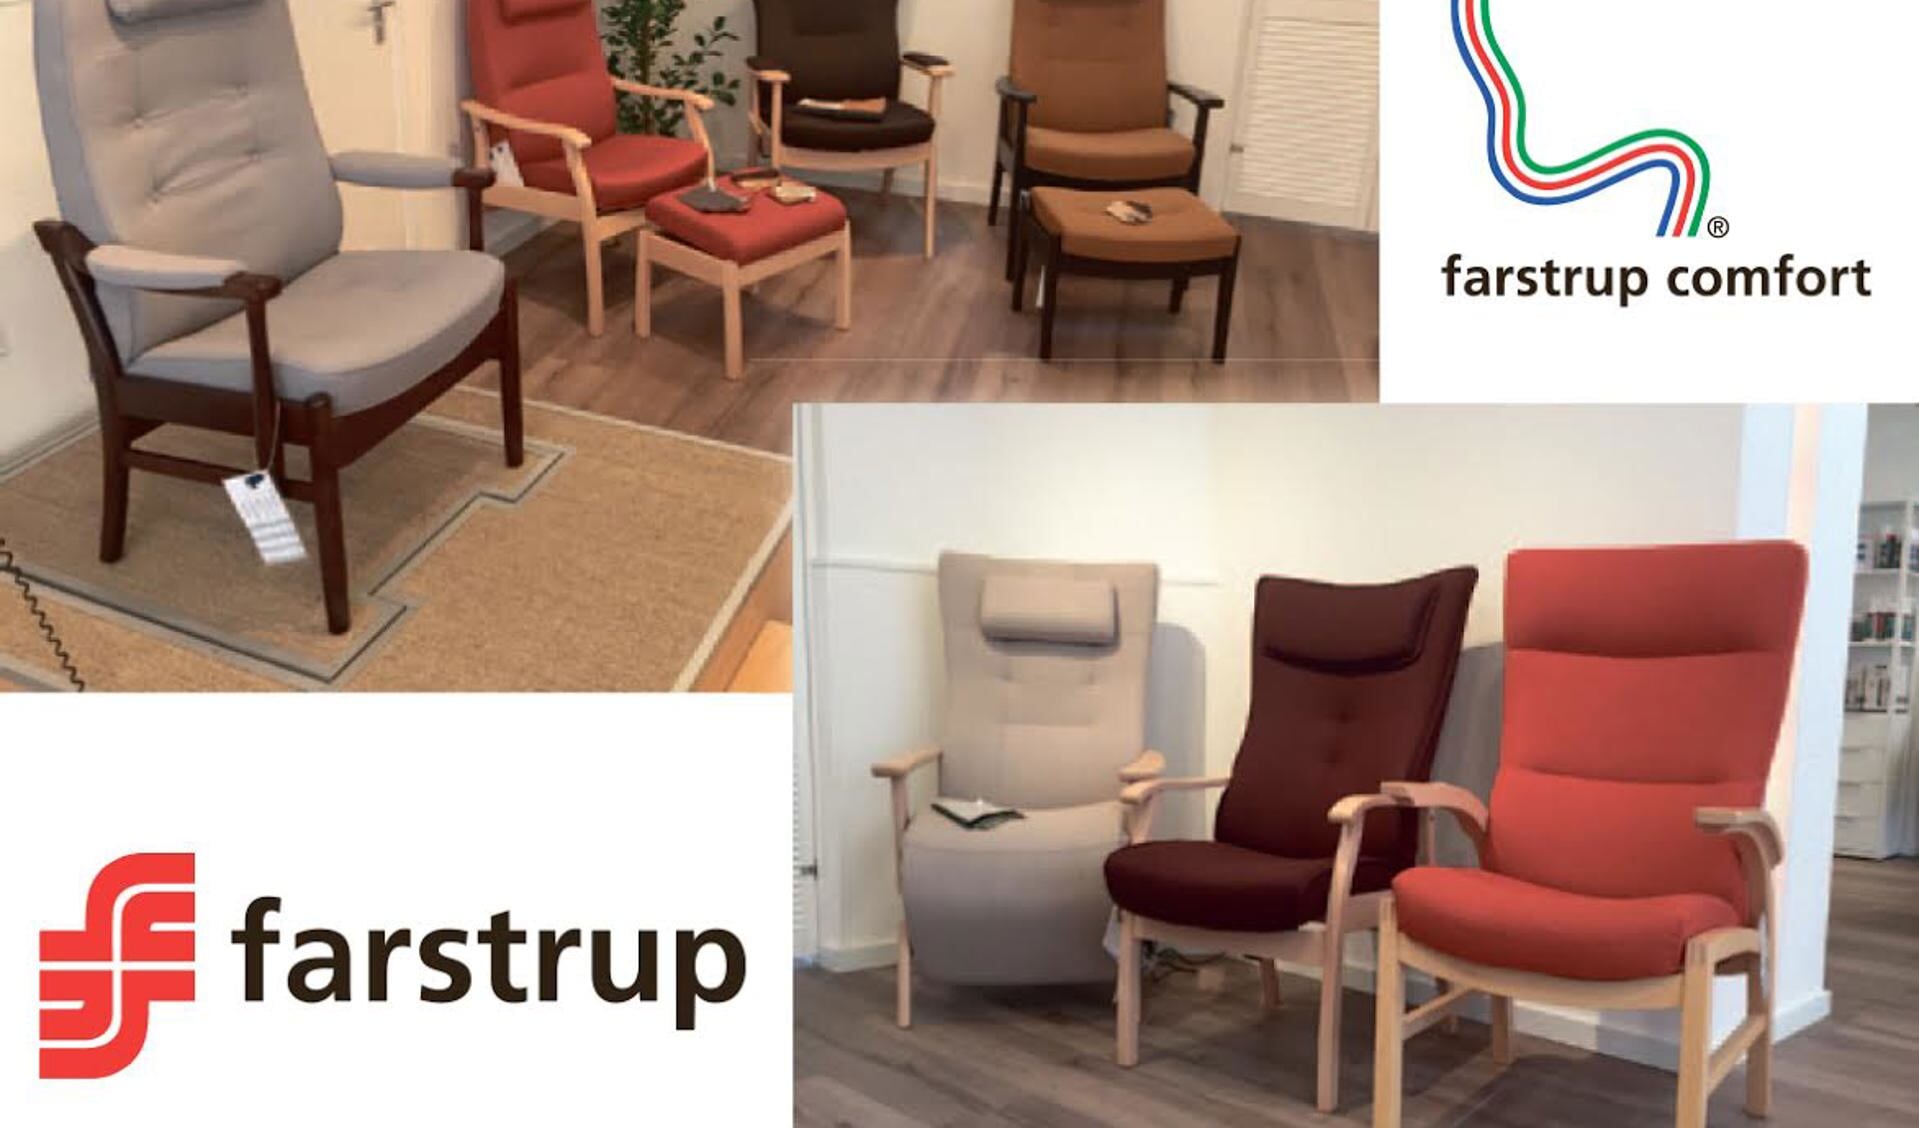 Enkele voorbeelden van de Farstrup fauteuils. 